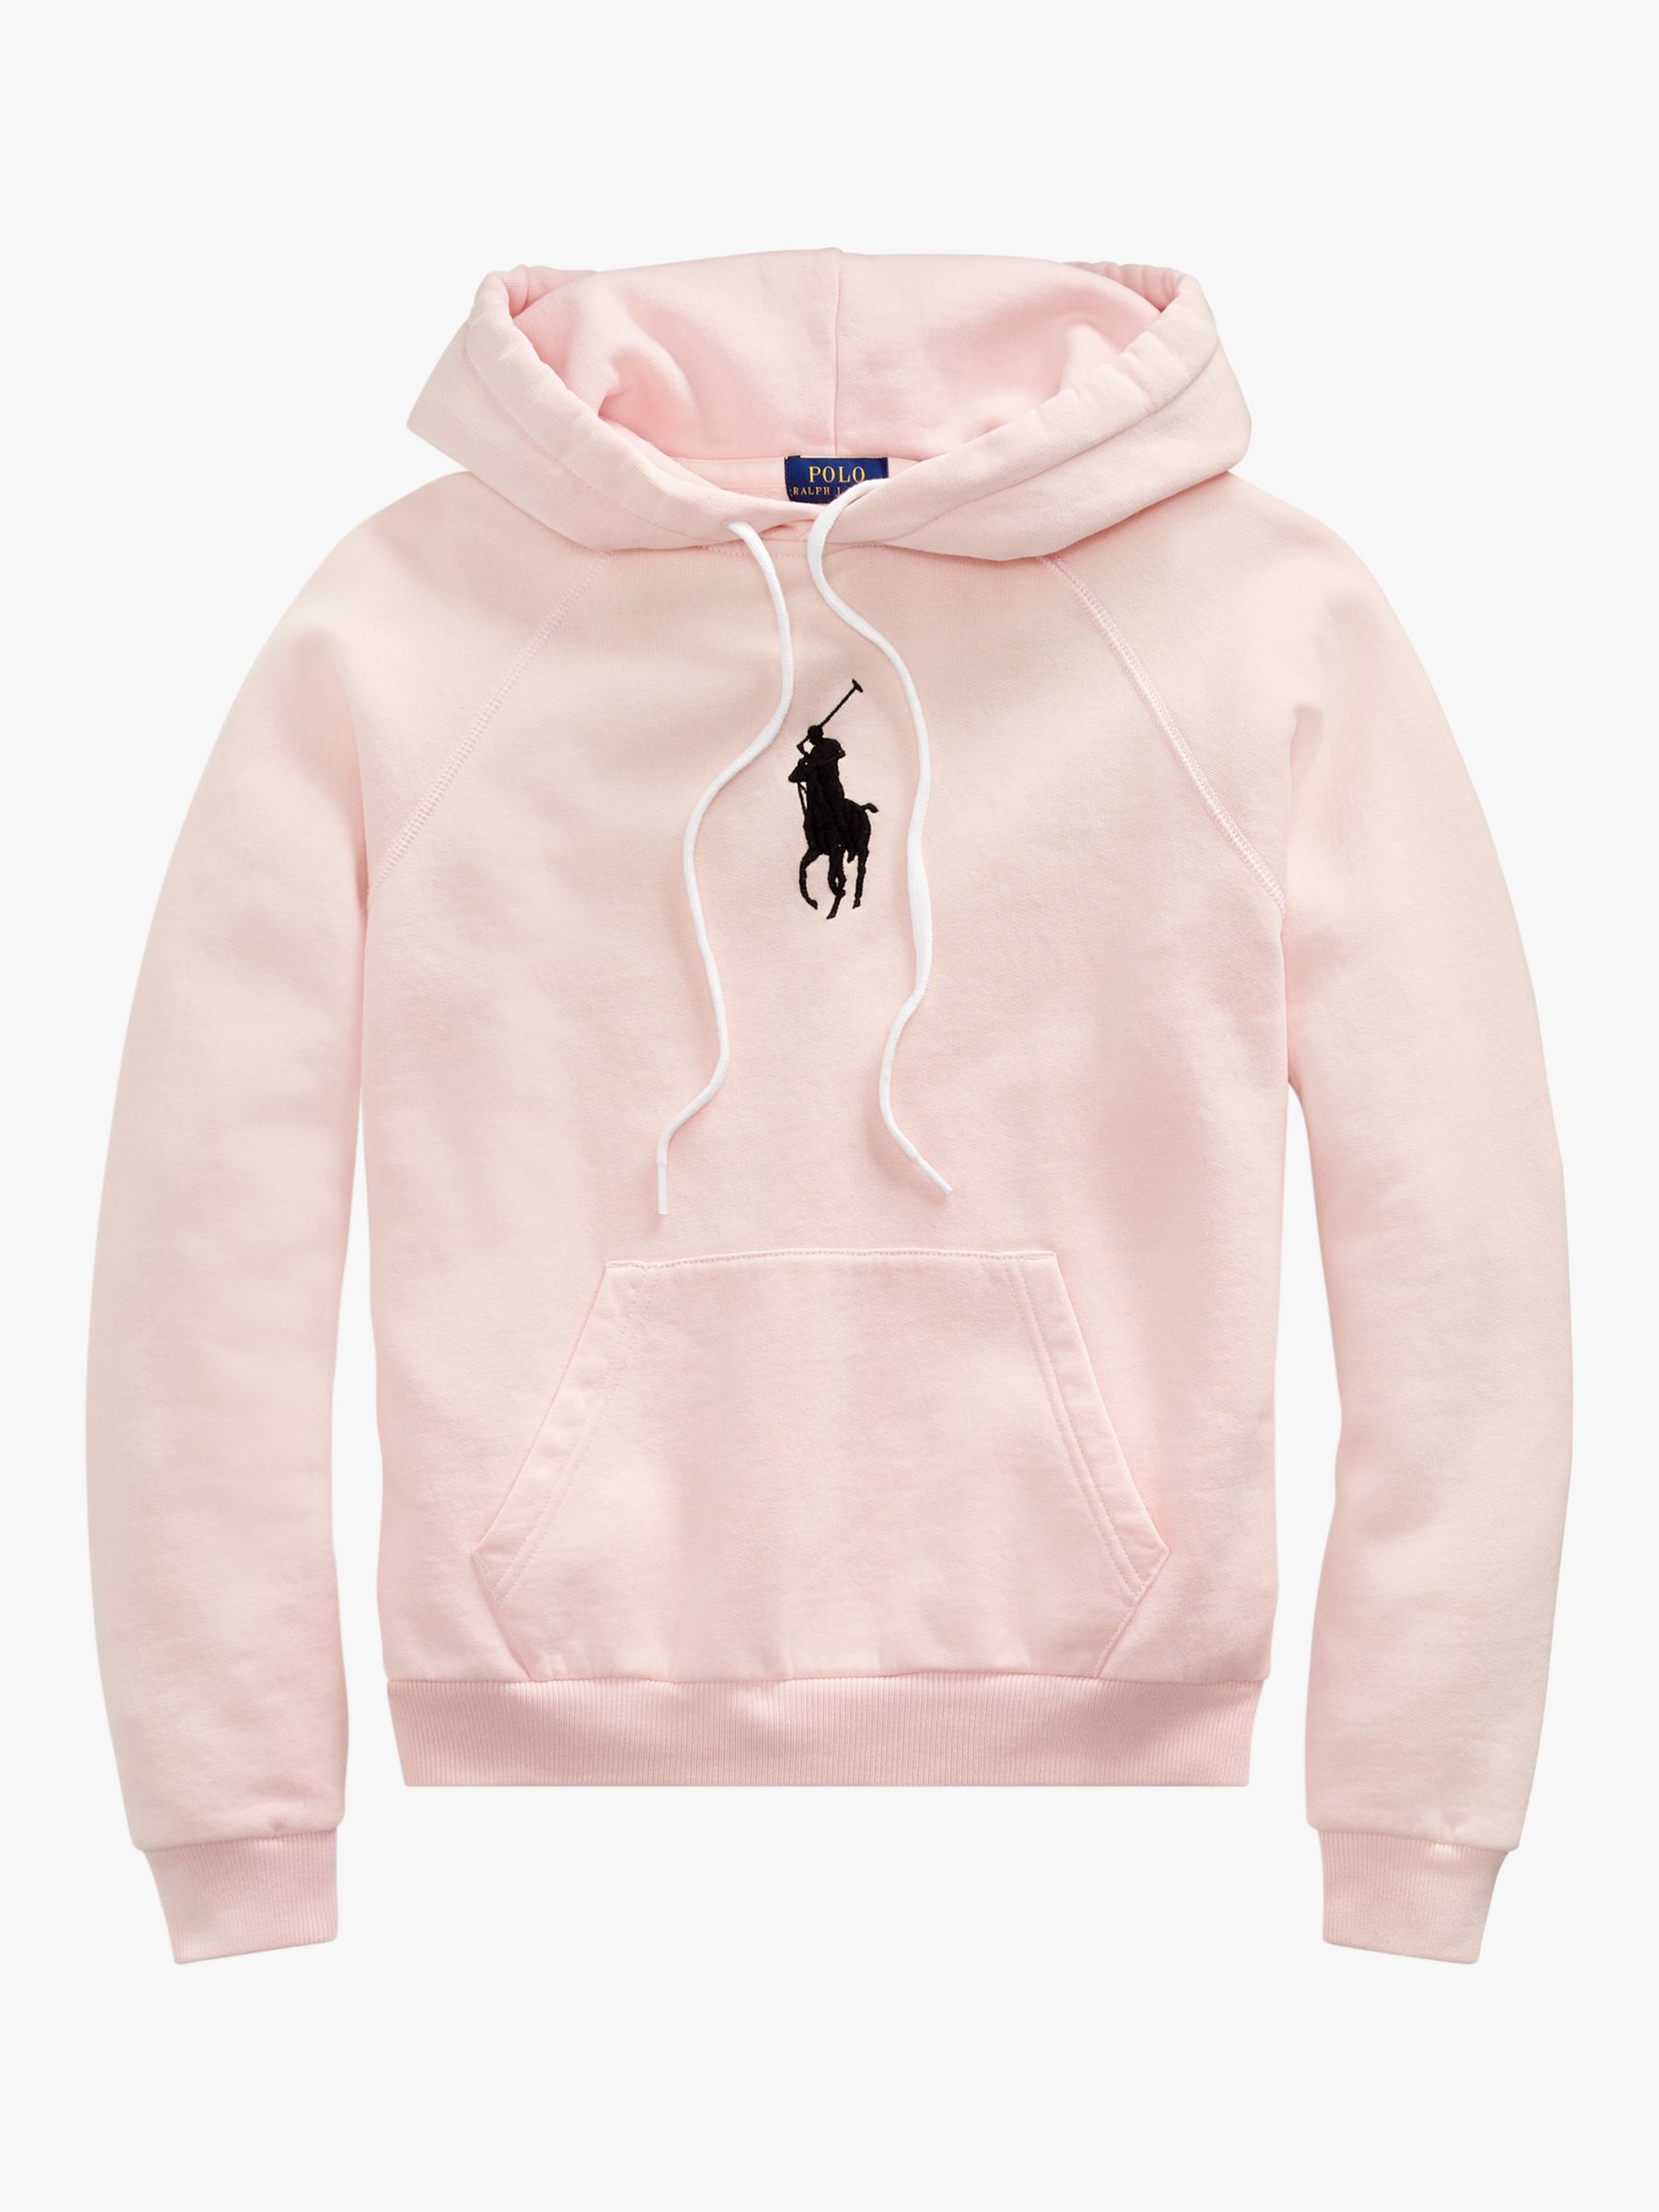 pink ralph lauren sweatshirt